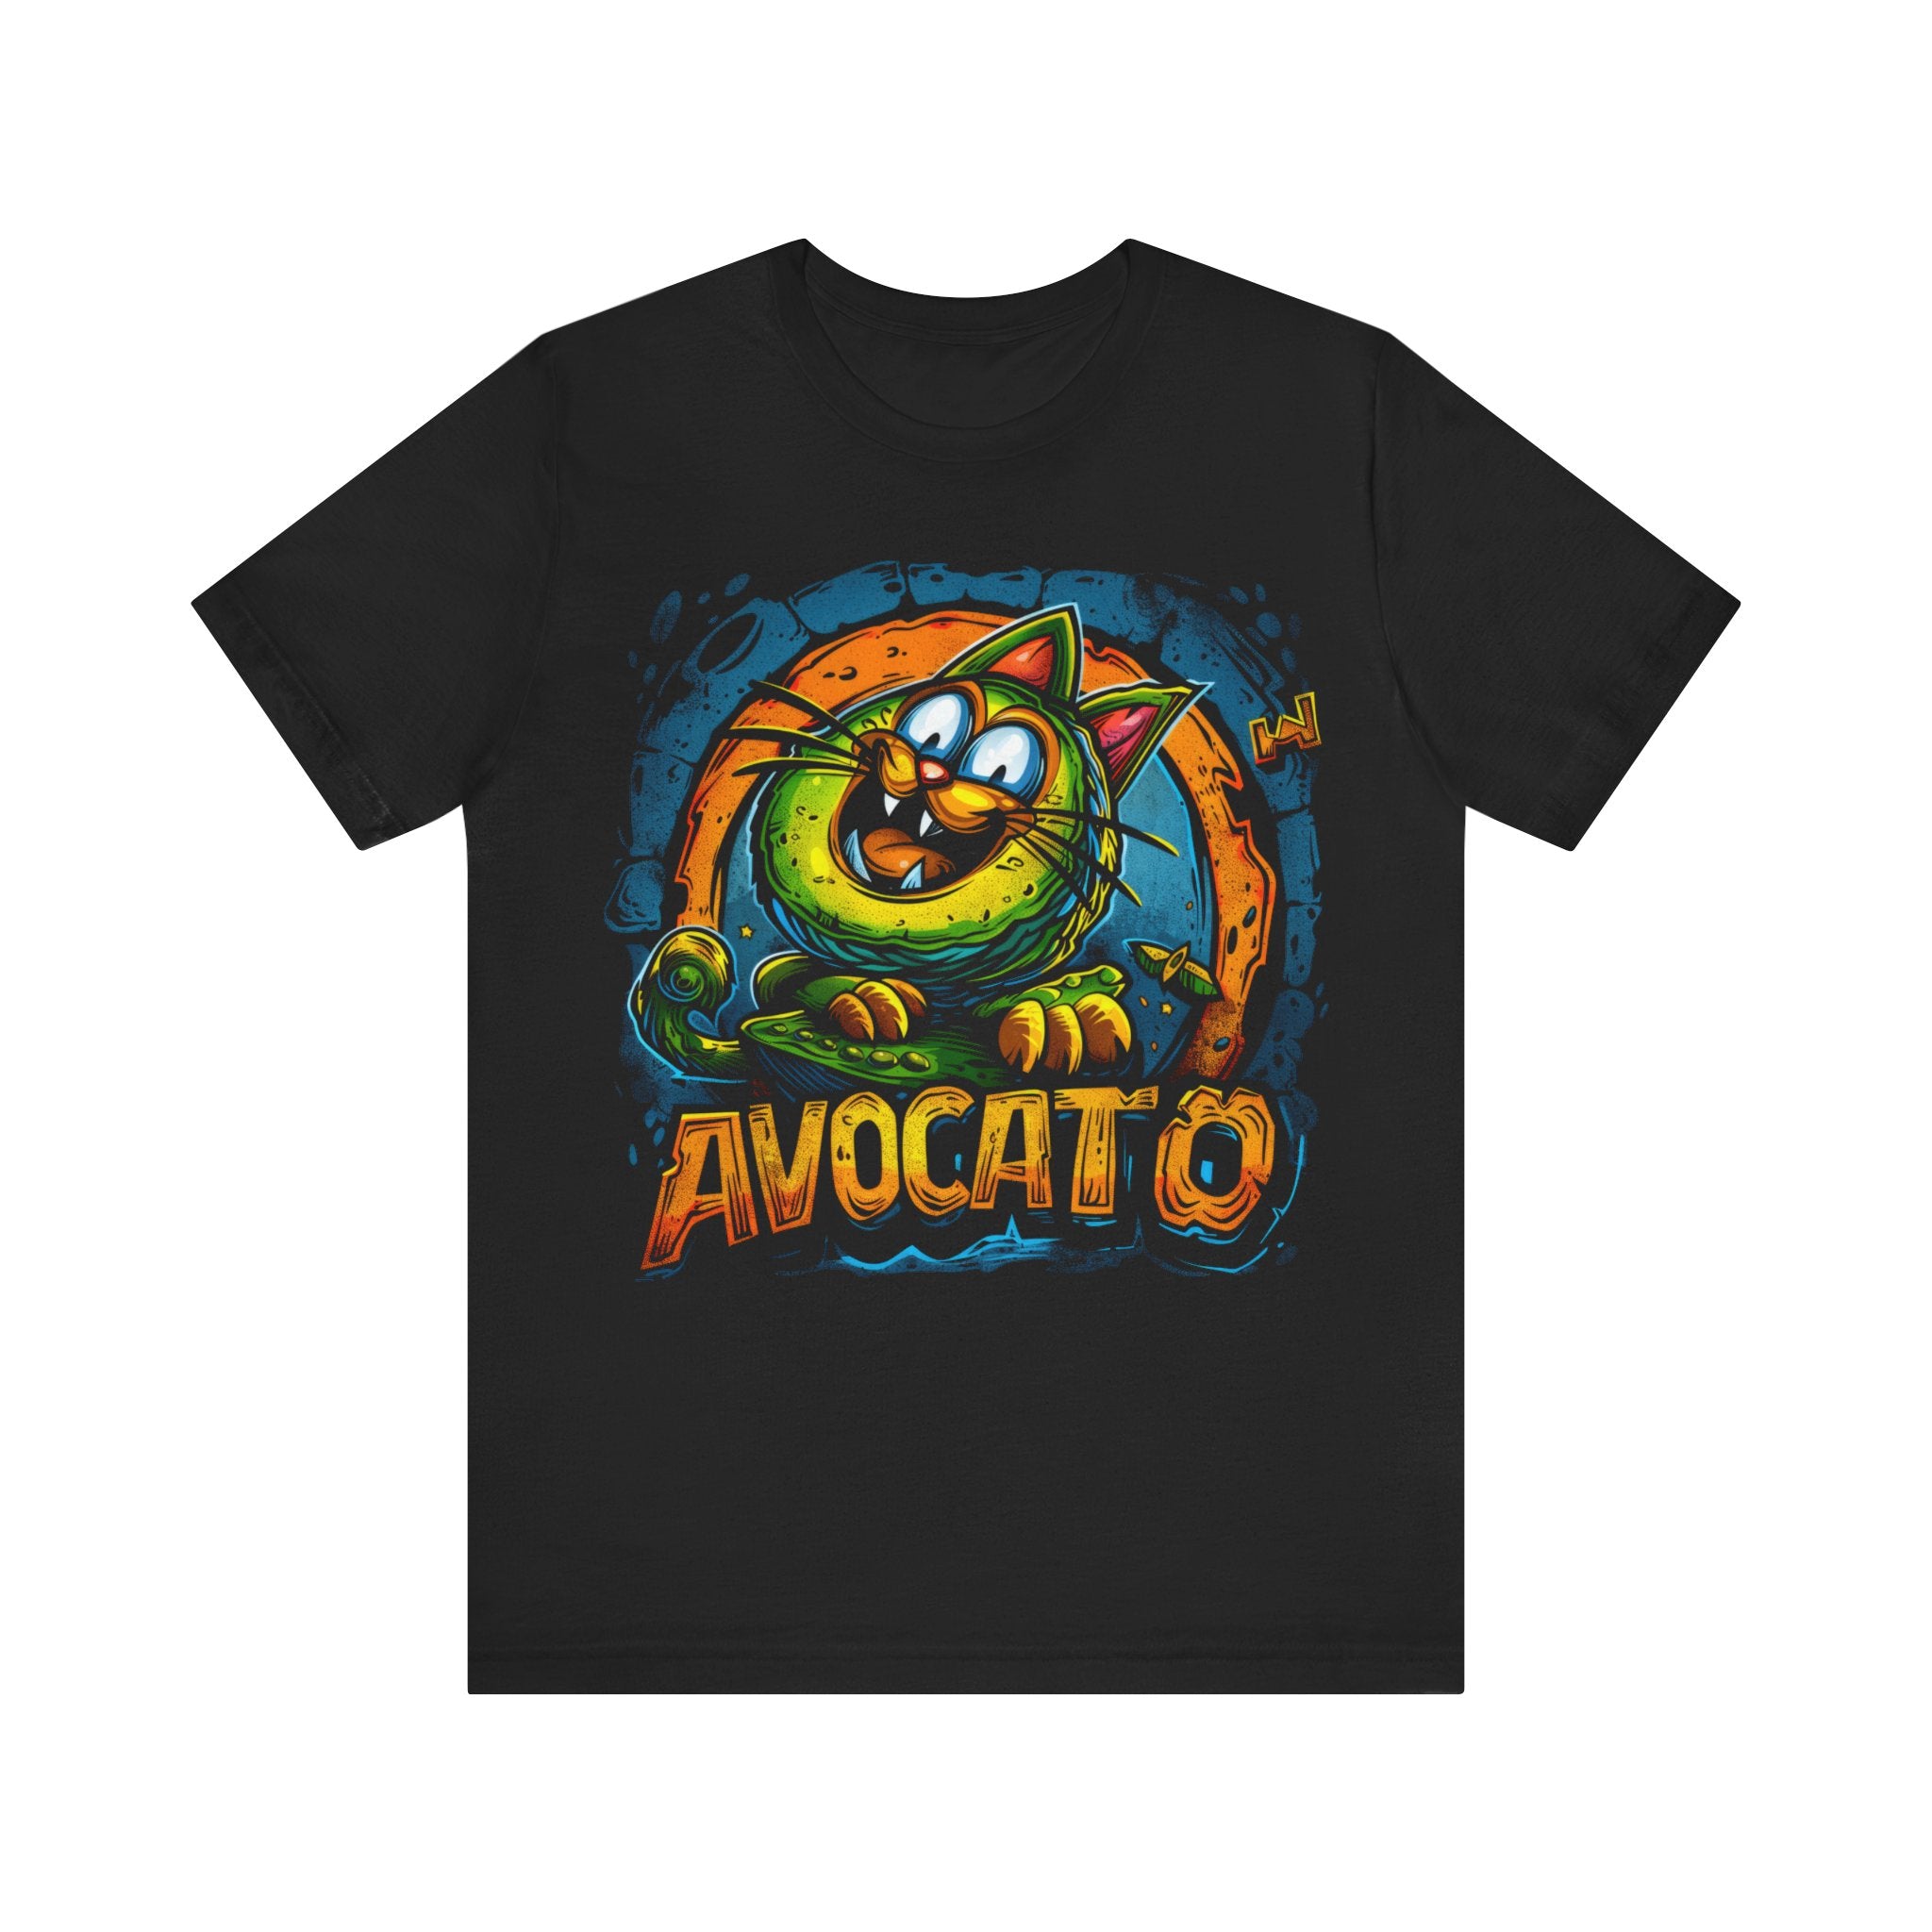 Cat Avocado aka Avocato T-Shirt Funny Cat Lover Tee